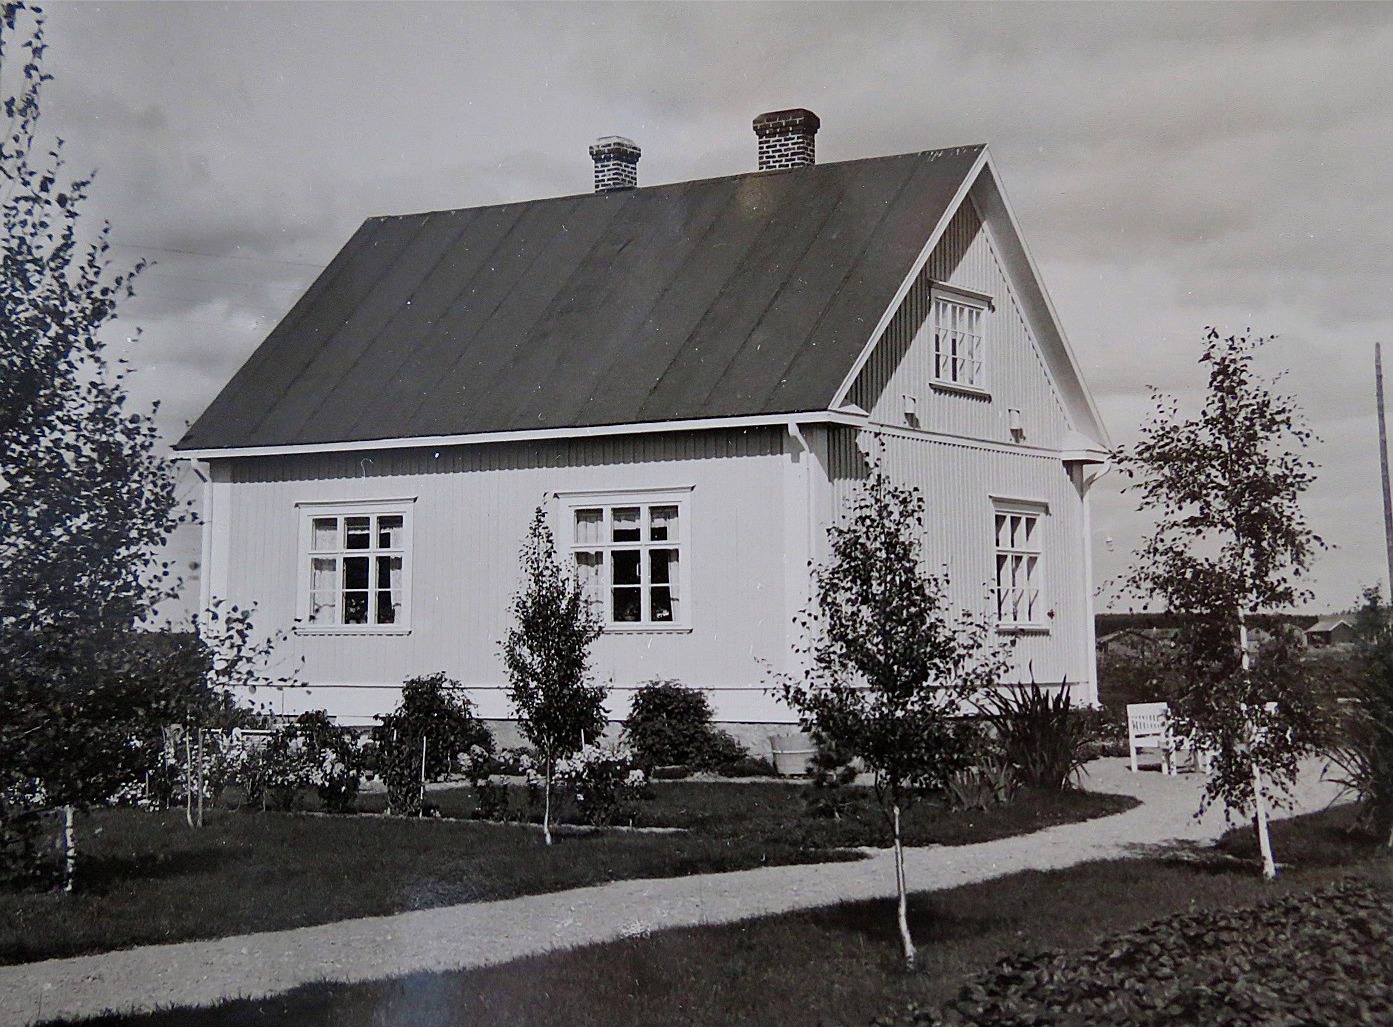 Efter pensionering från lärararbetet i Dagsmark blev Wadström bankdirektör i Lappfjärd. I början på 1930-talet byggde han denna gård på Lappfjärdsvägen 832, som alltså stod mittemot banken. Efter Wadströms död såldes gården åt Åke och Gunnel Ålgars.